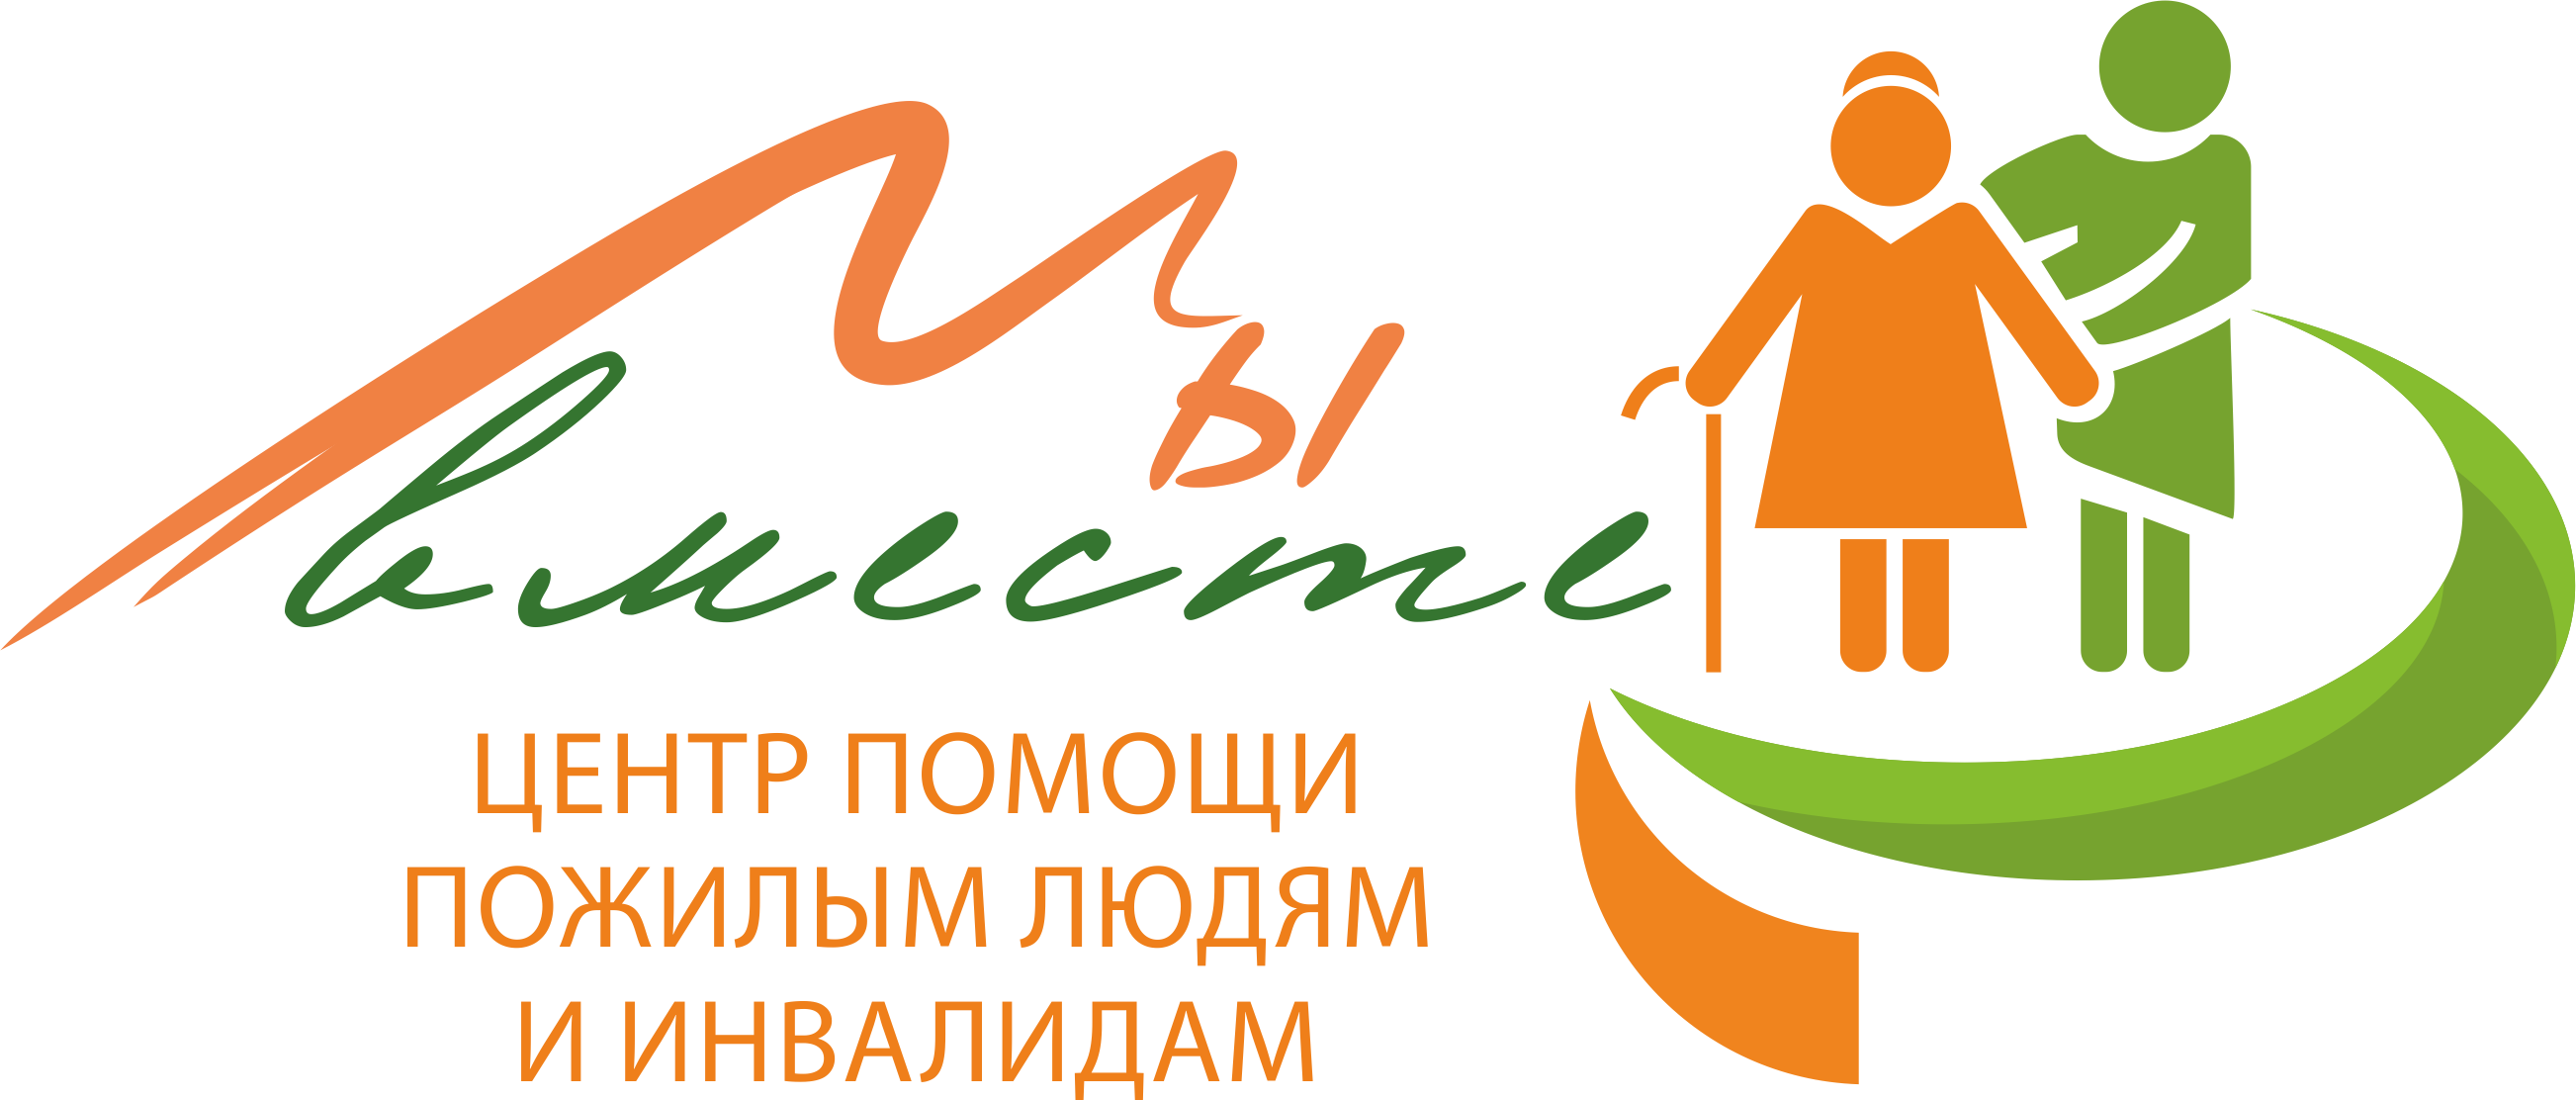 В Брянской области для пожилых людей организовали онлайн-встречи с интересными людьми. Очередная — 12 августа